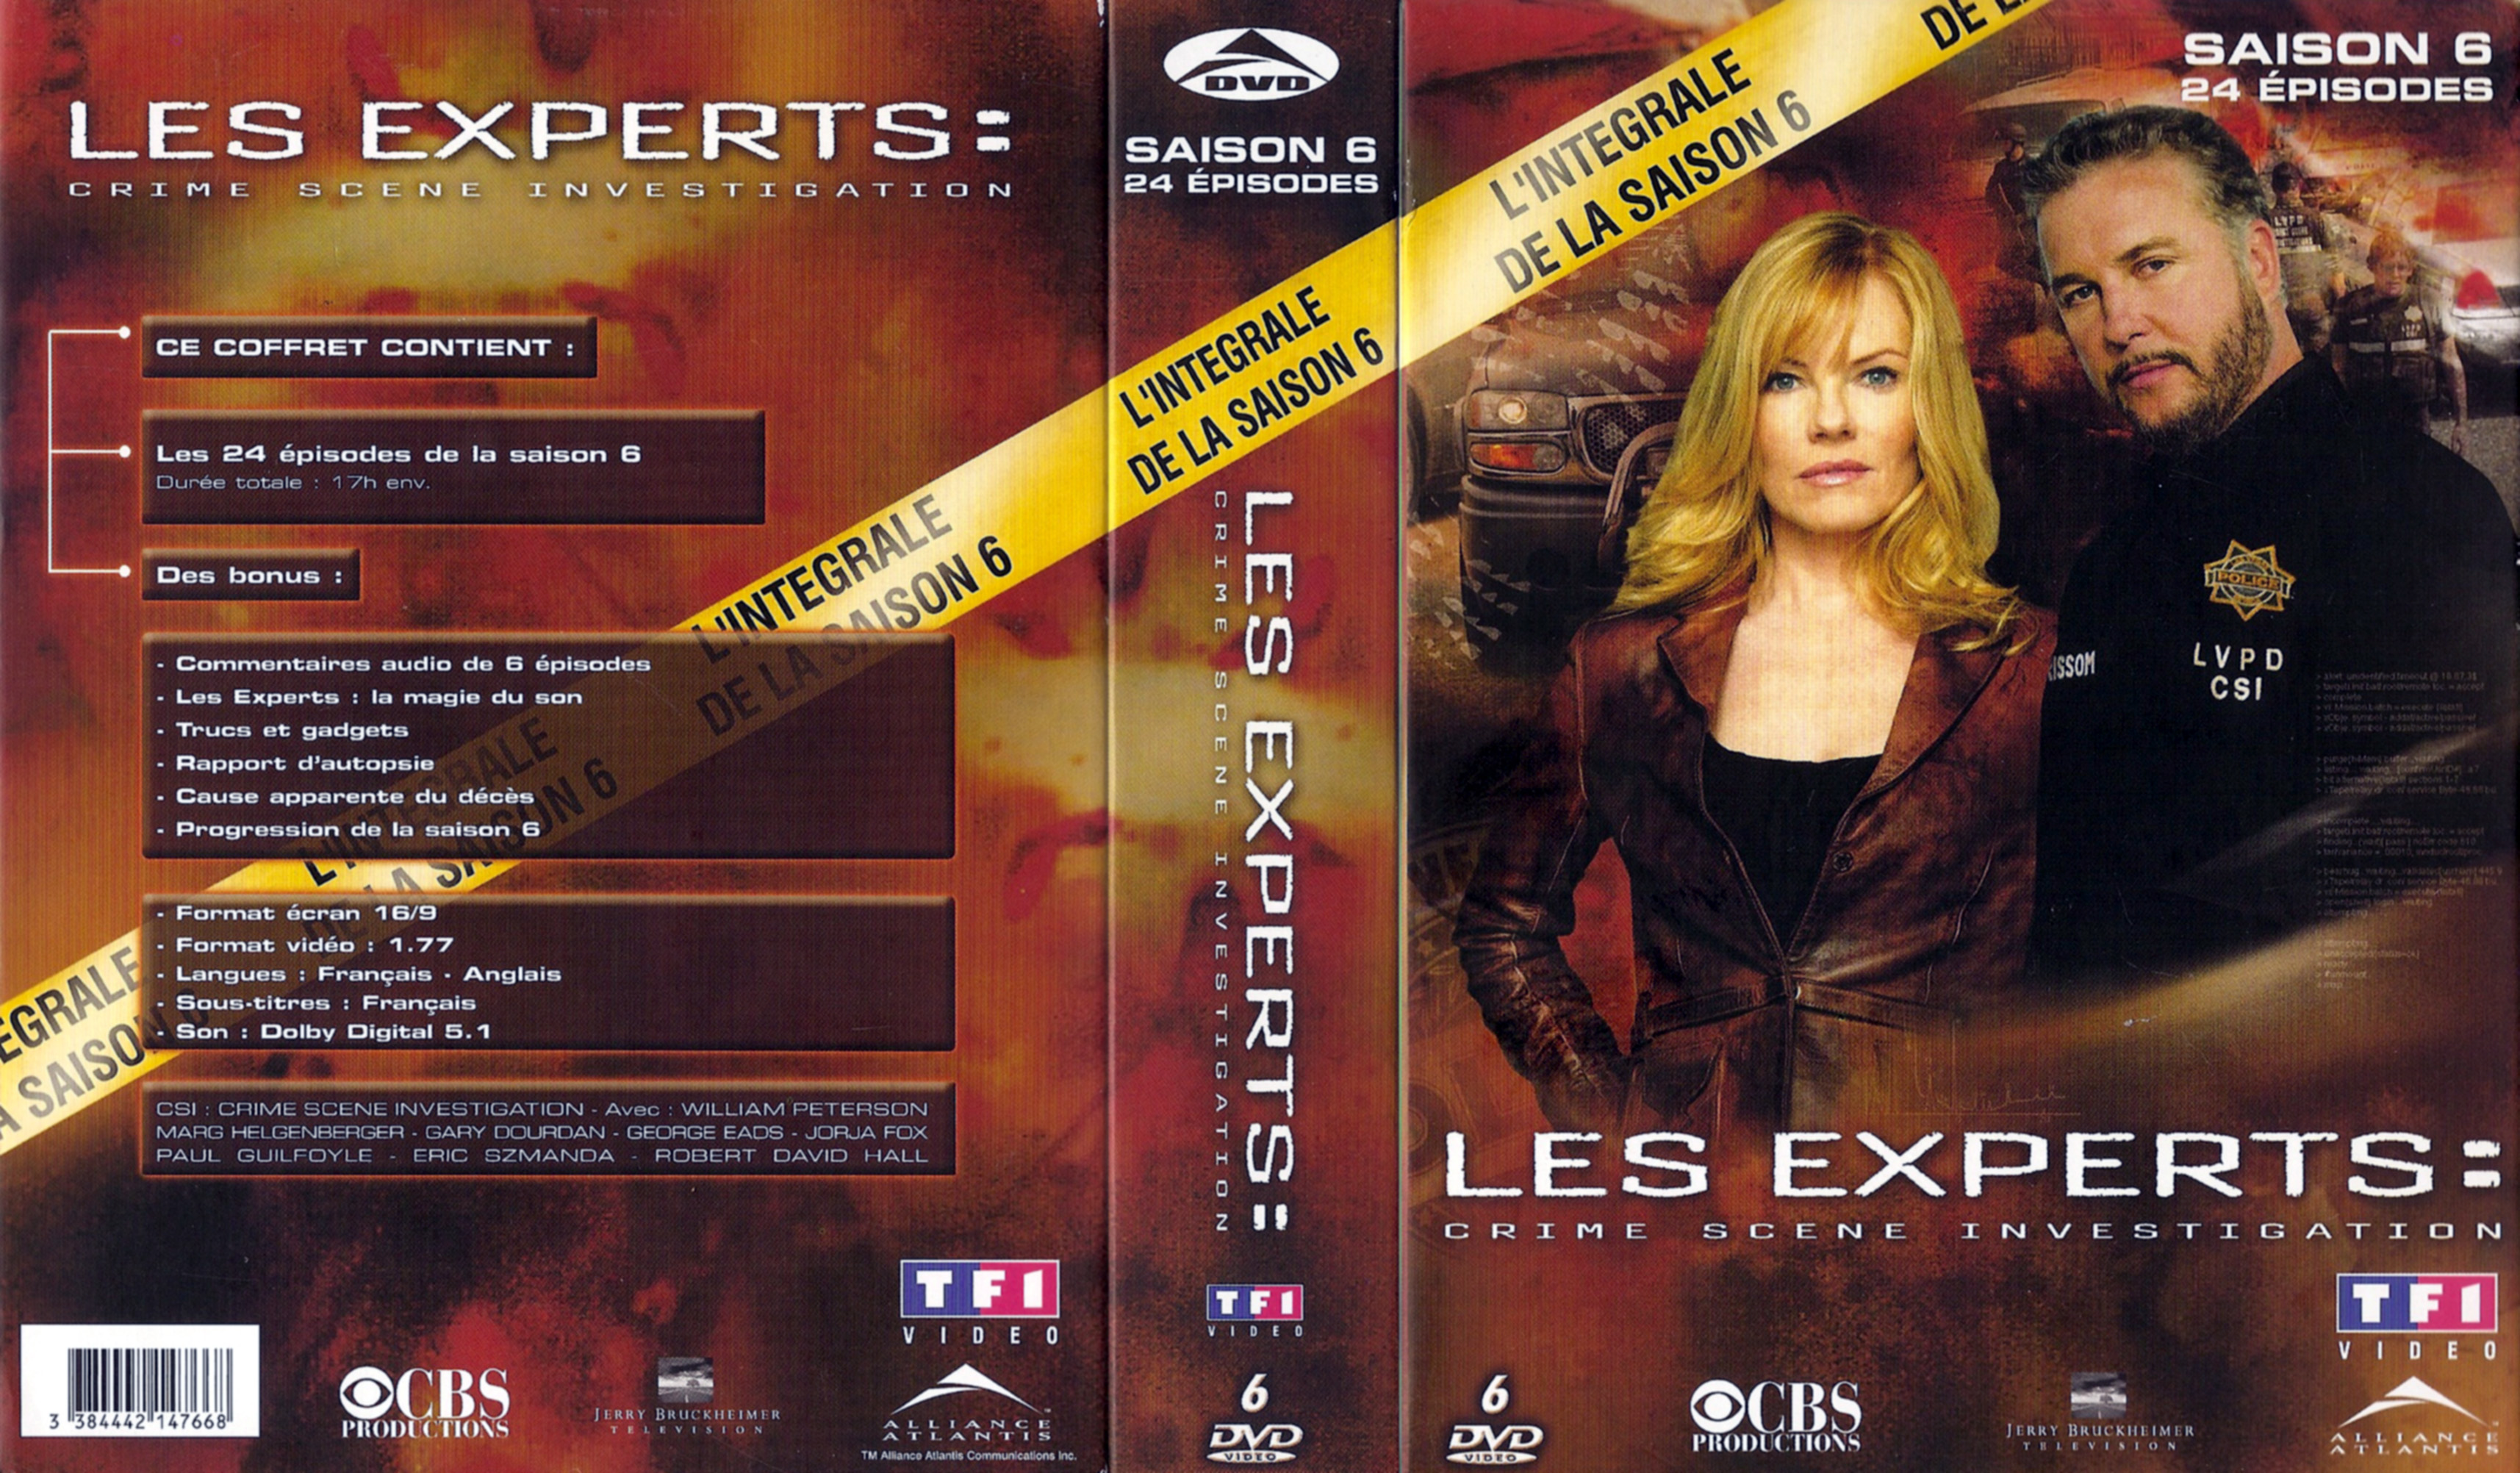 Jaquette DVD Les experts Saison 6 COFFRET